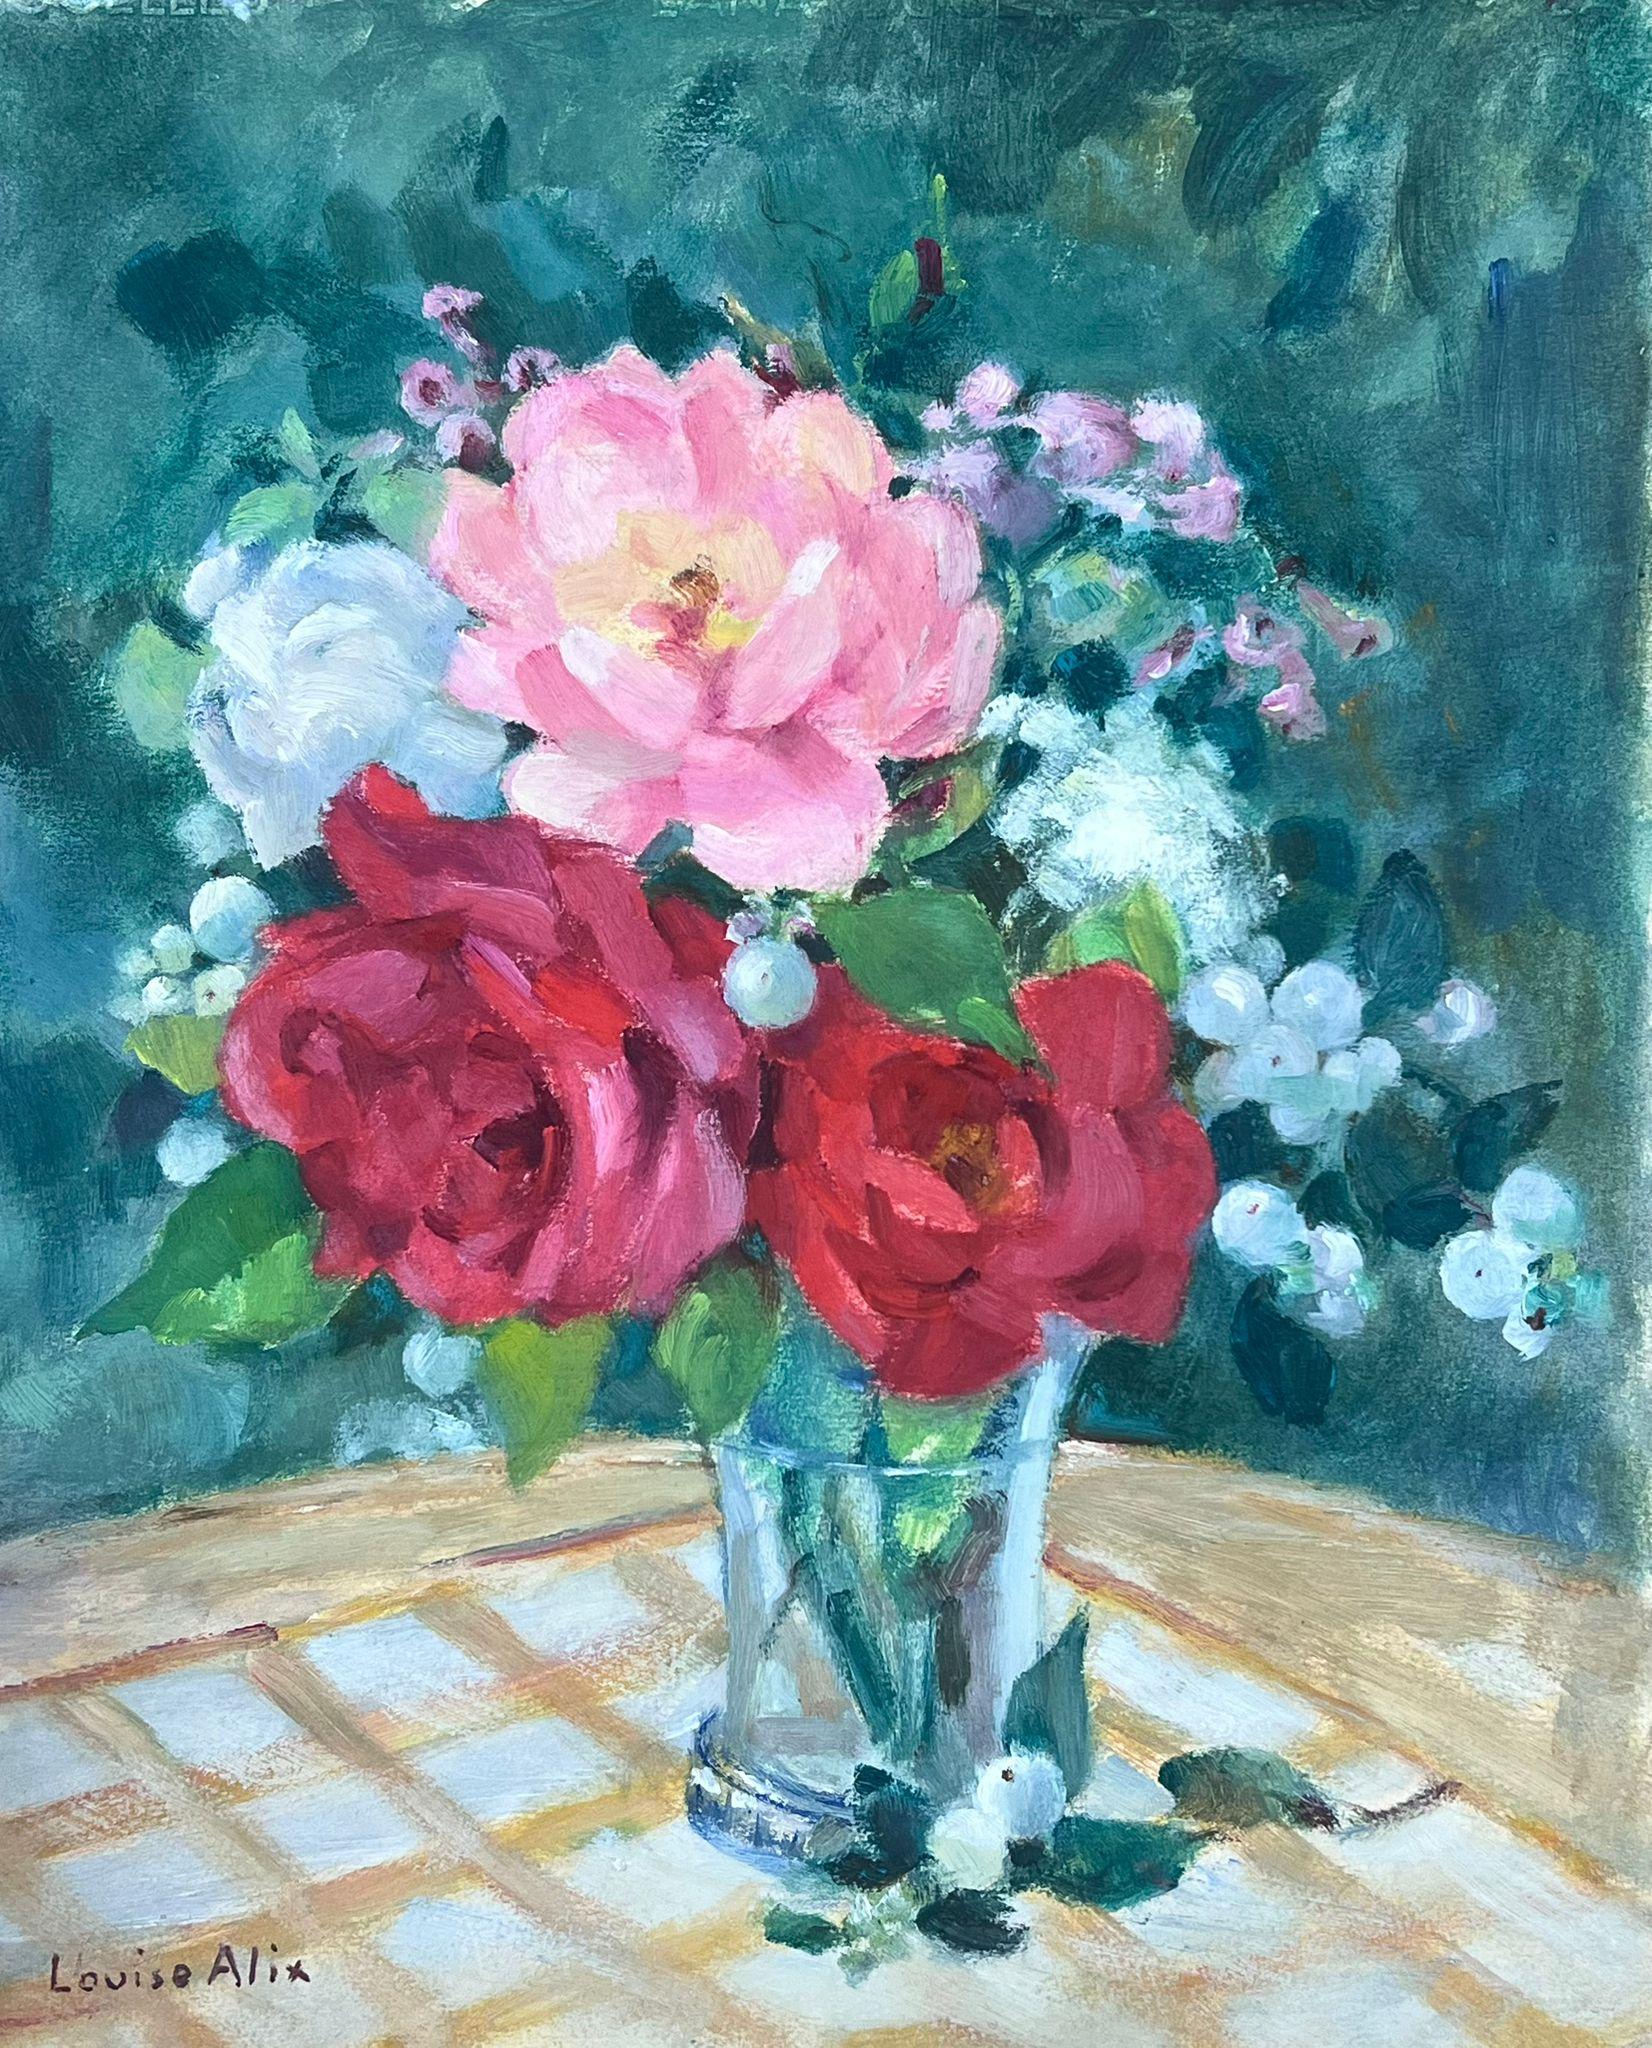 Still-Life Painting Louise Alix - Nature morte impressionniste française des années 1930, bouquet de roses roses et rouges dans un vase